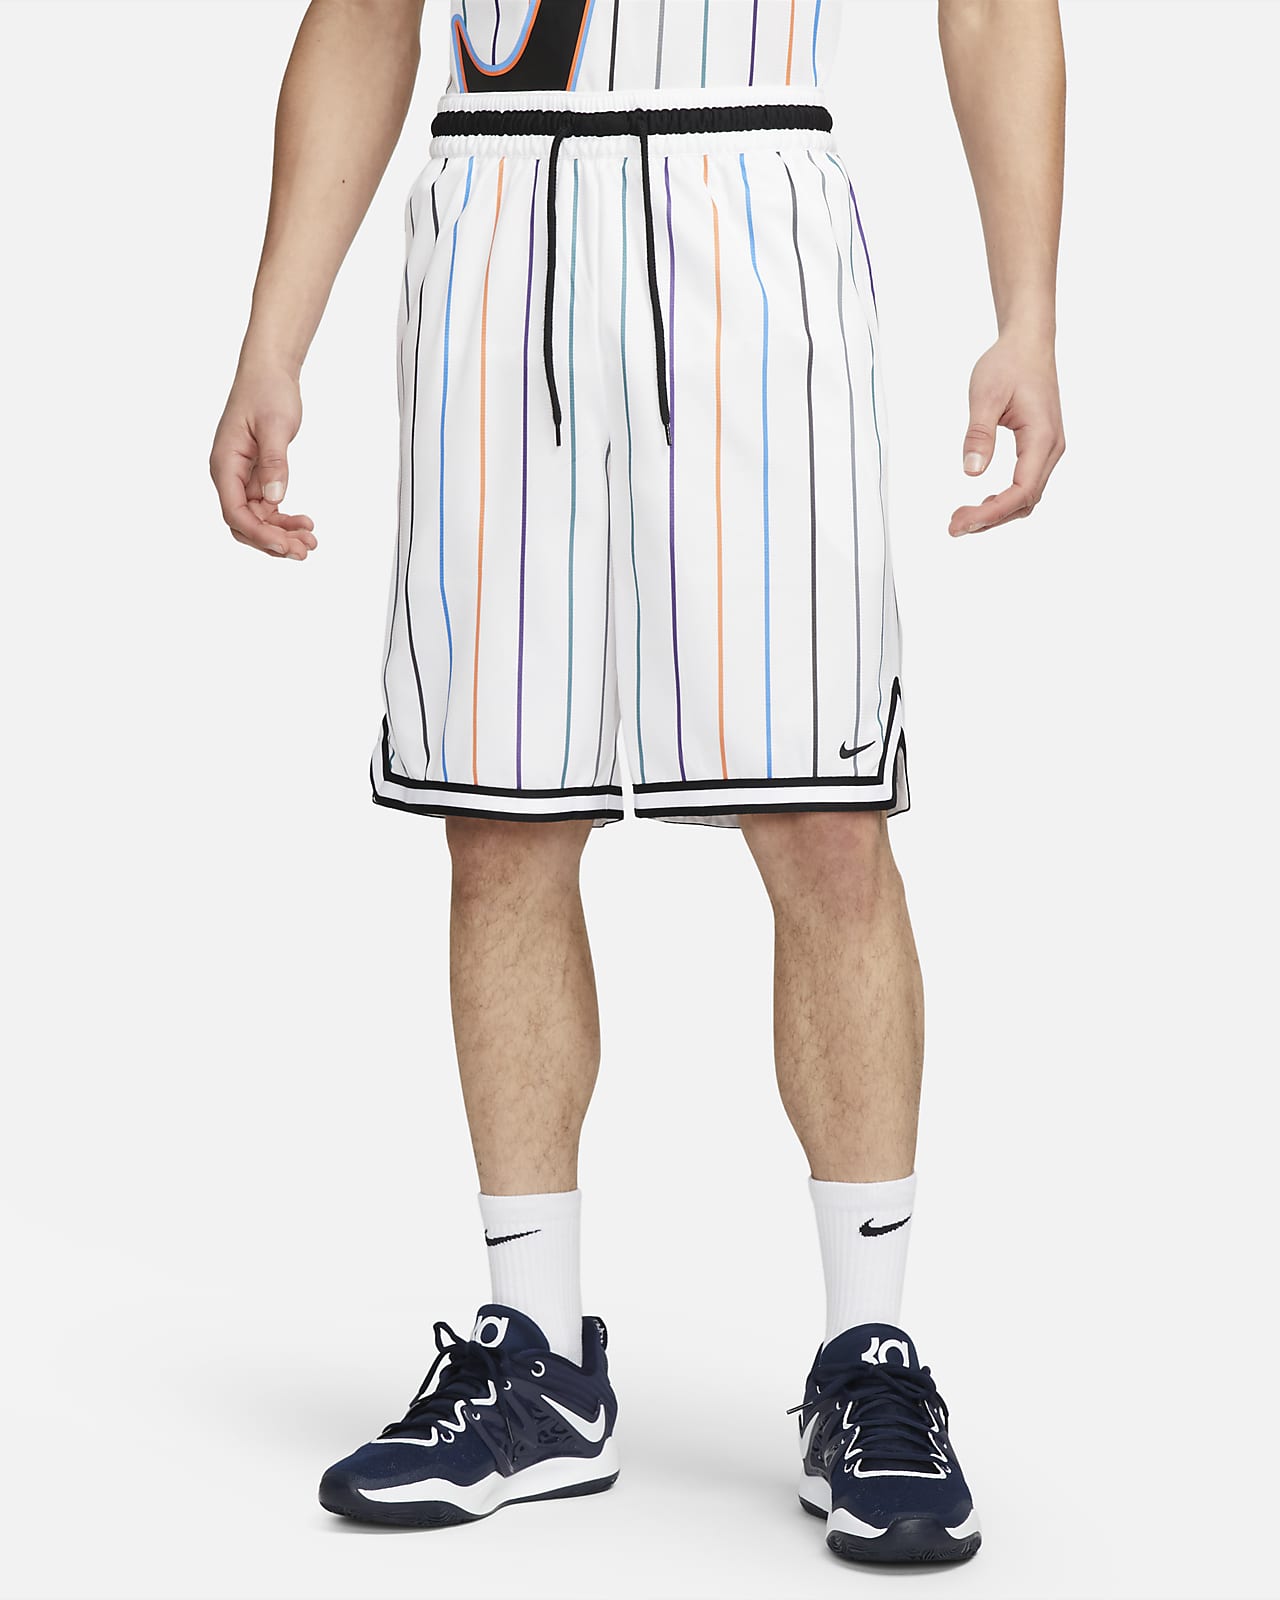 Shorts de básquetbol de 25 cm para hombre Nike Dri-FIT DNA